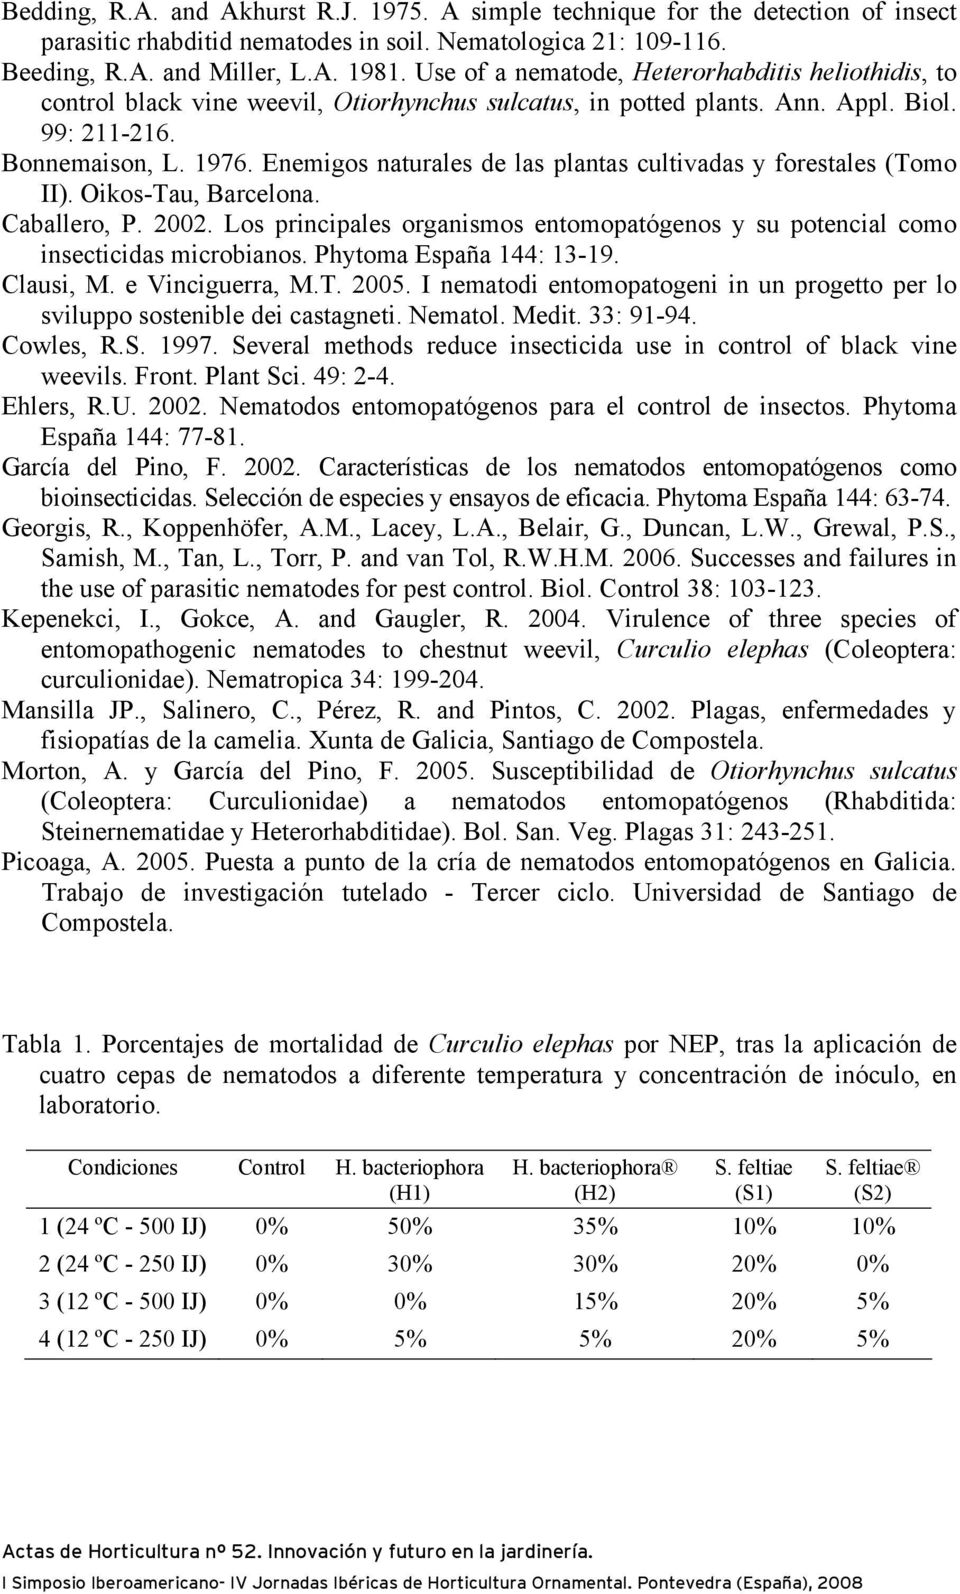 Enemigos naturales de las plantas cultivadas y forestales (Tomo II). Oikos-Tau, Barcelona. Caballero, P. 2002. Los principales organismos entomopatógenos y su potencial como insecticidas microbianos.